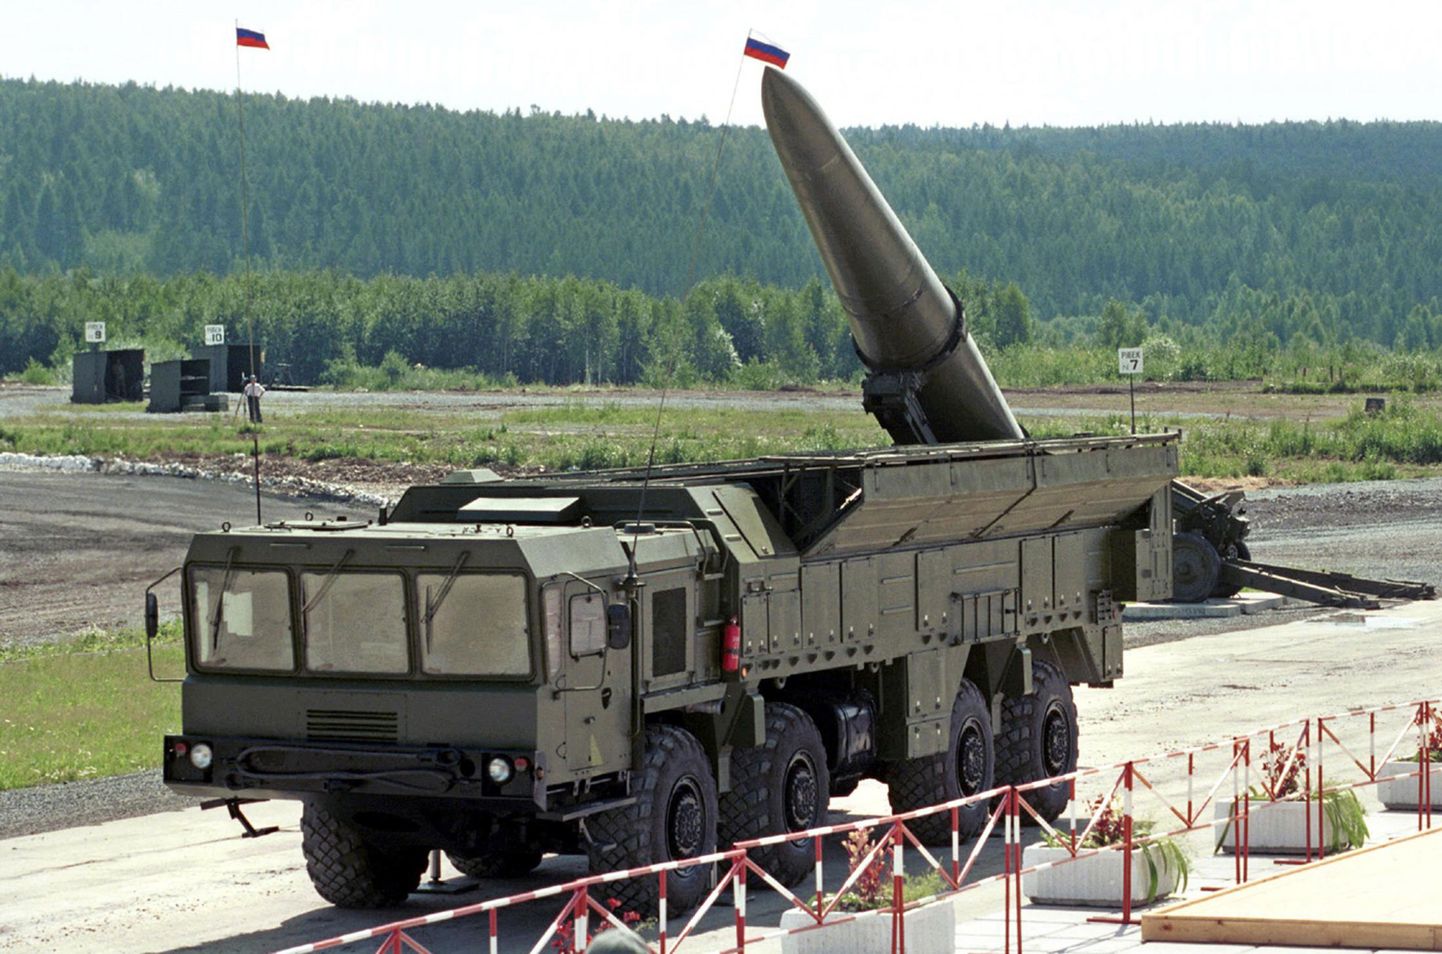 Vene raketikompleks Iskander sõjandusnäitusel.